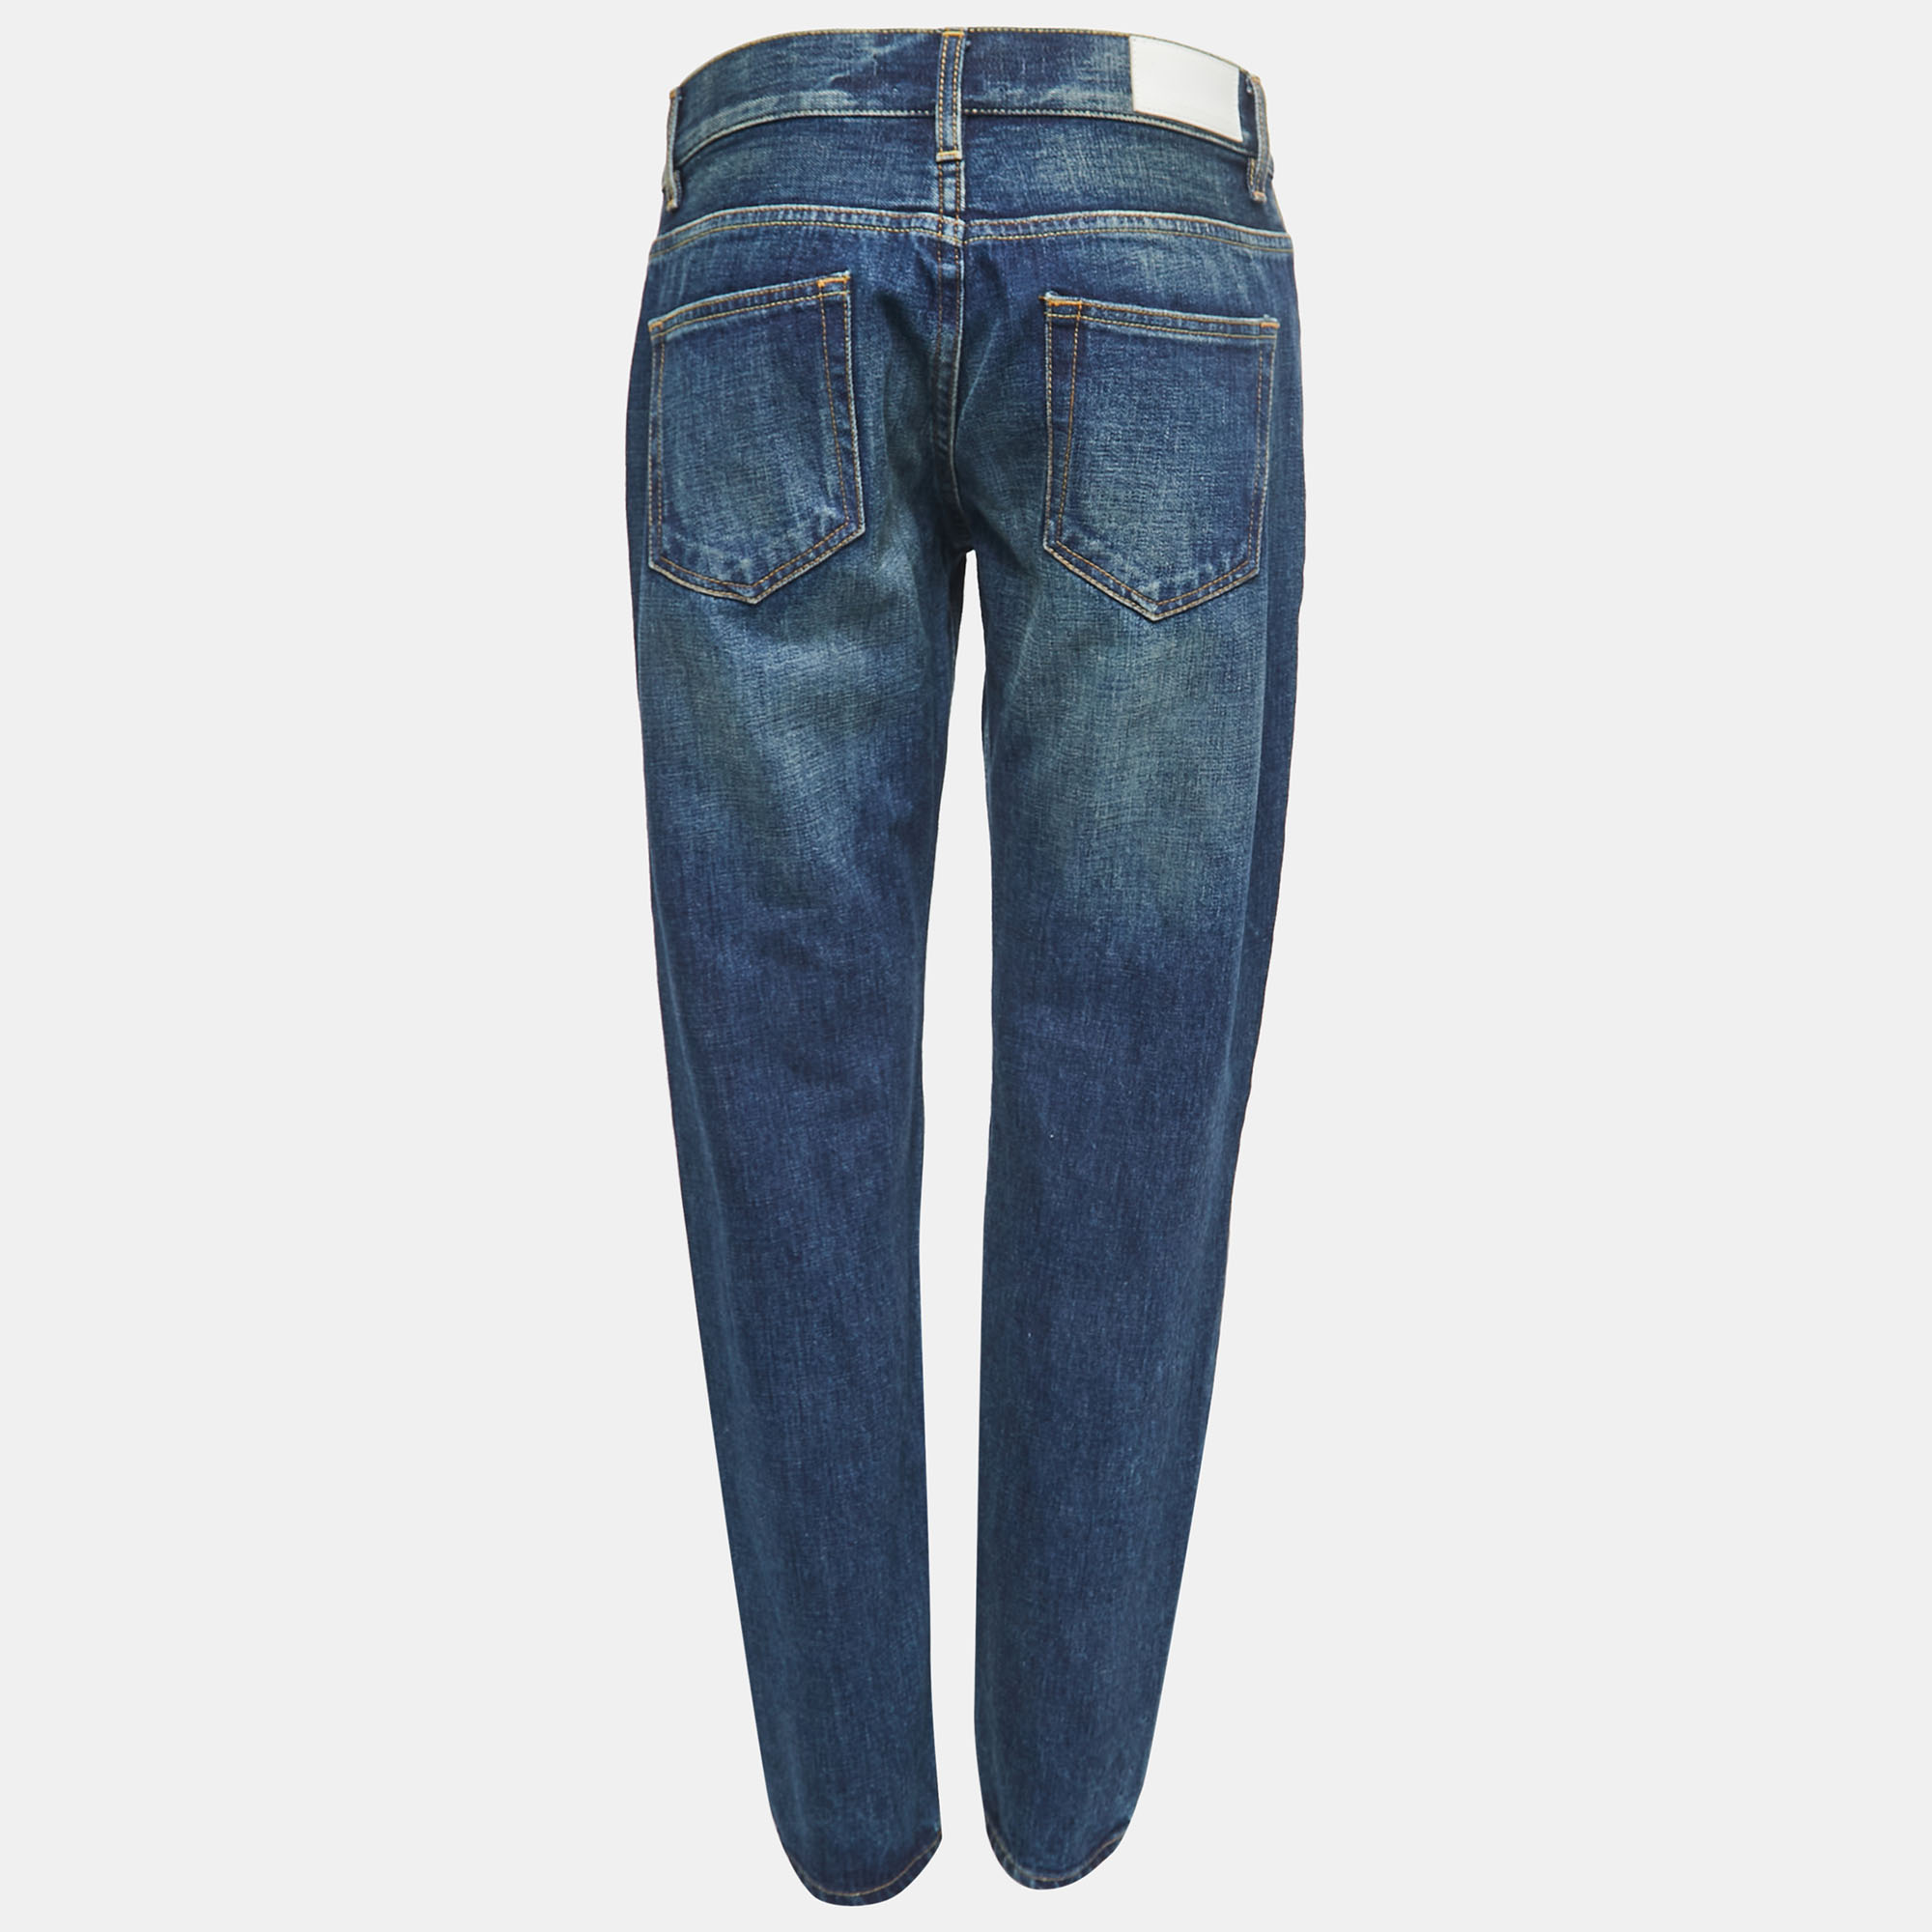 

Victoria Beckham Blue Denim Boyfriend Jeans  Waist 27